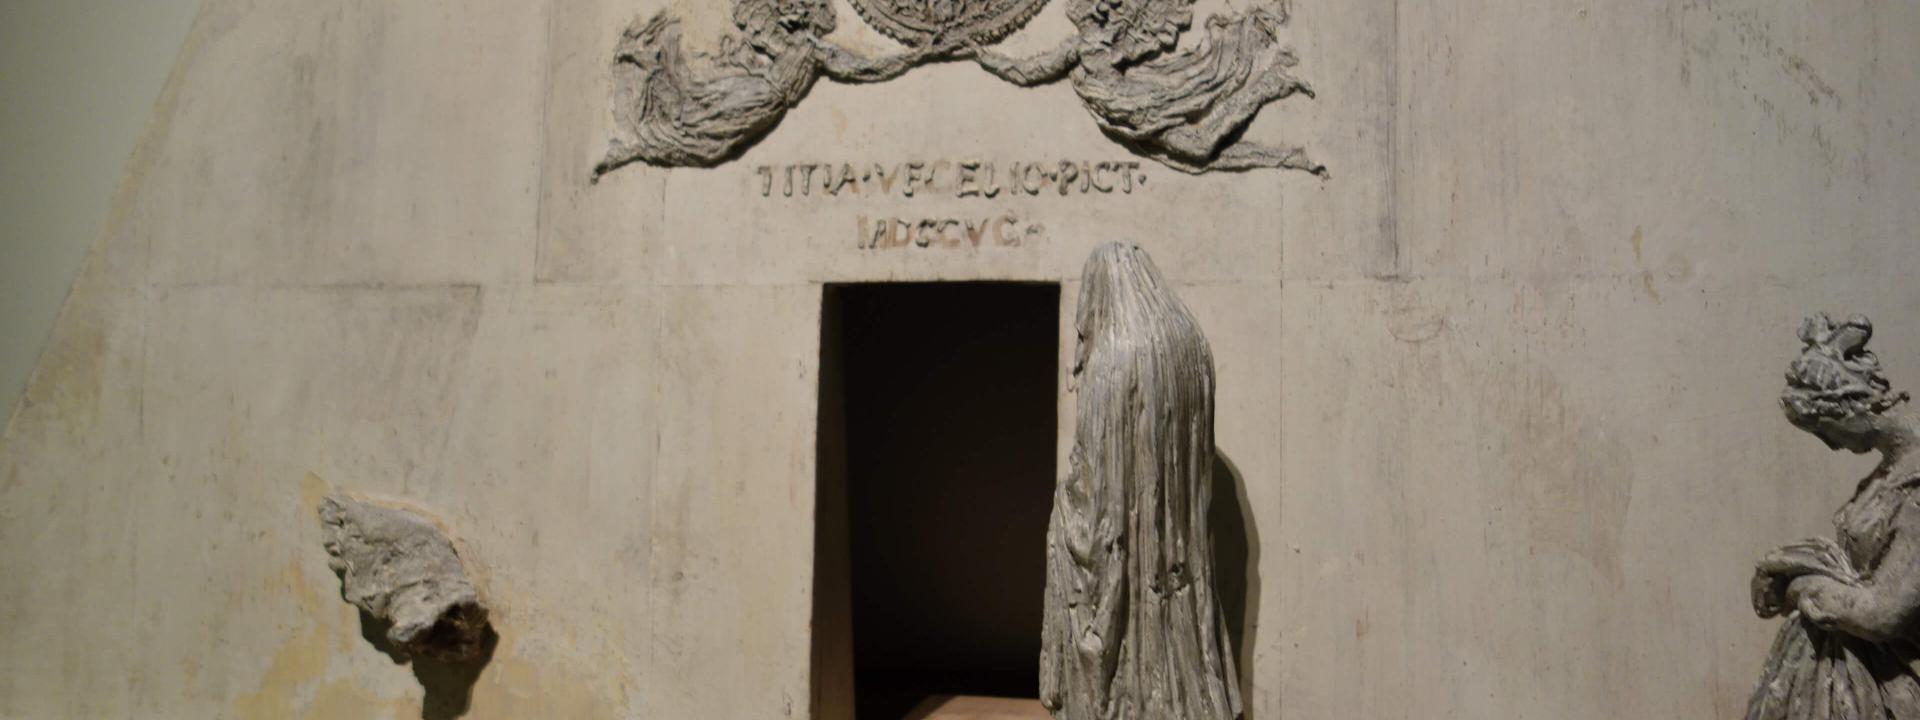 Modello del monumento a Tiziano